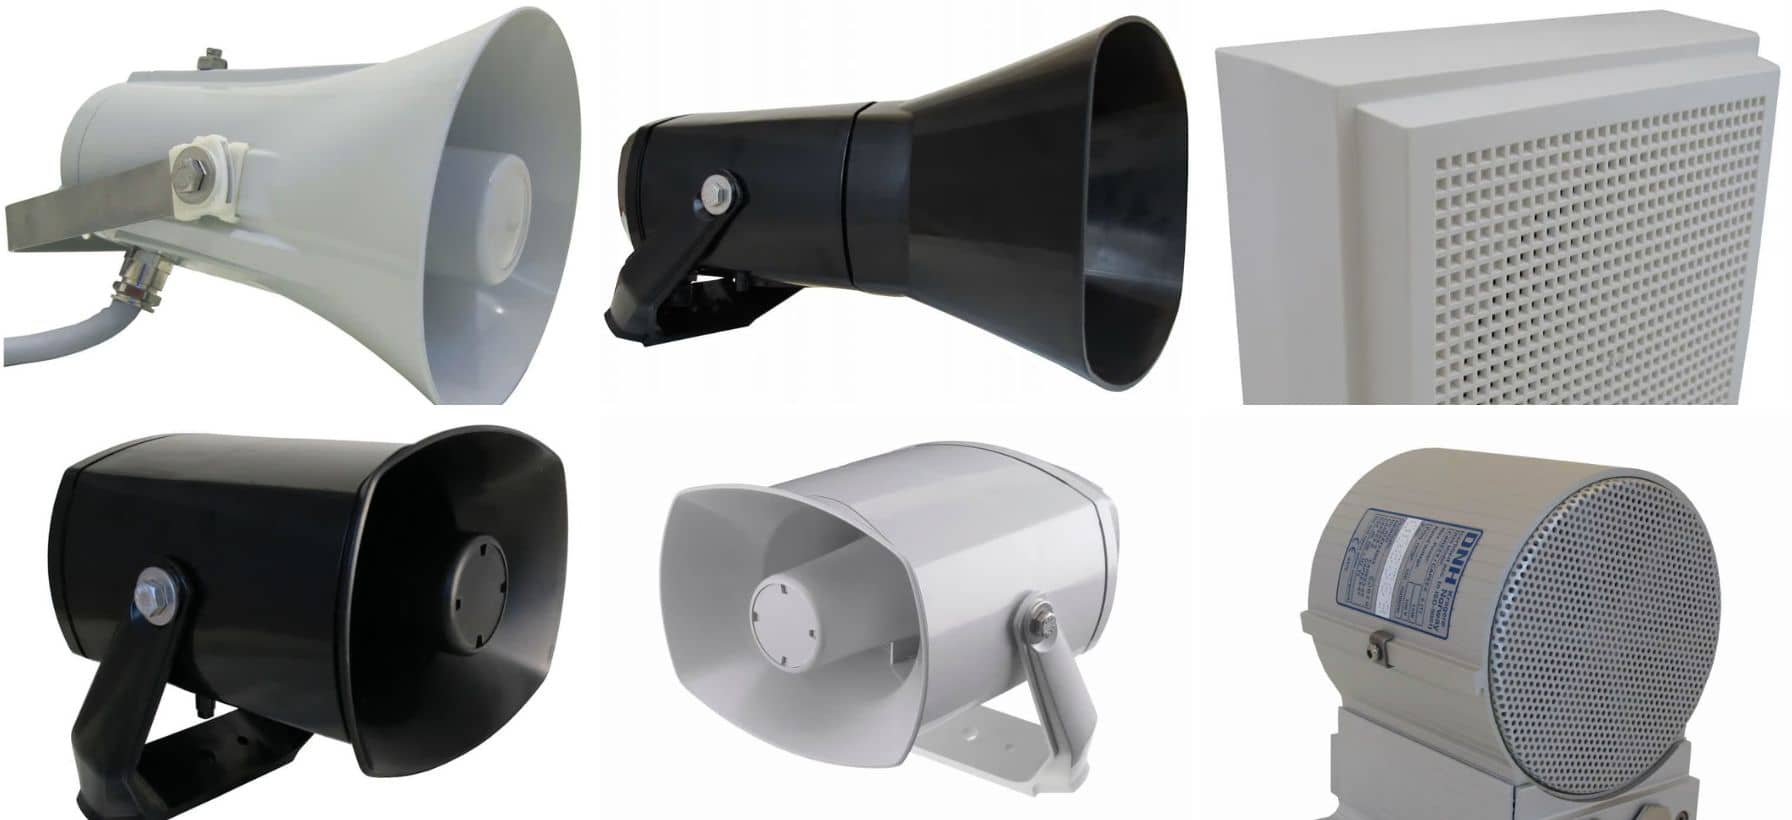 speakers for hazardous environments